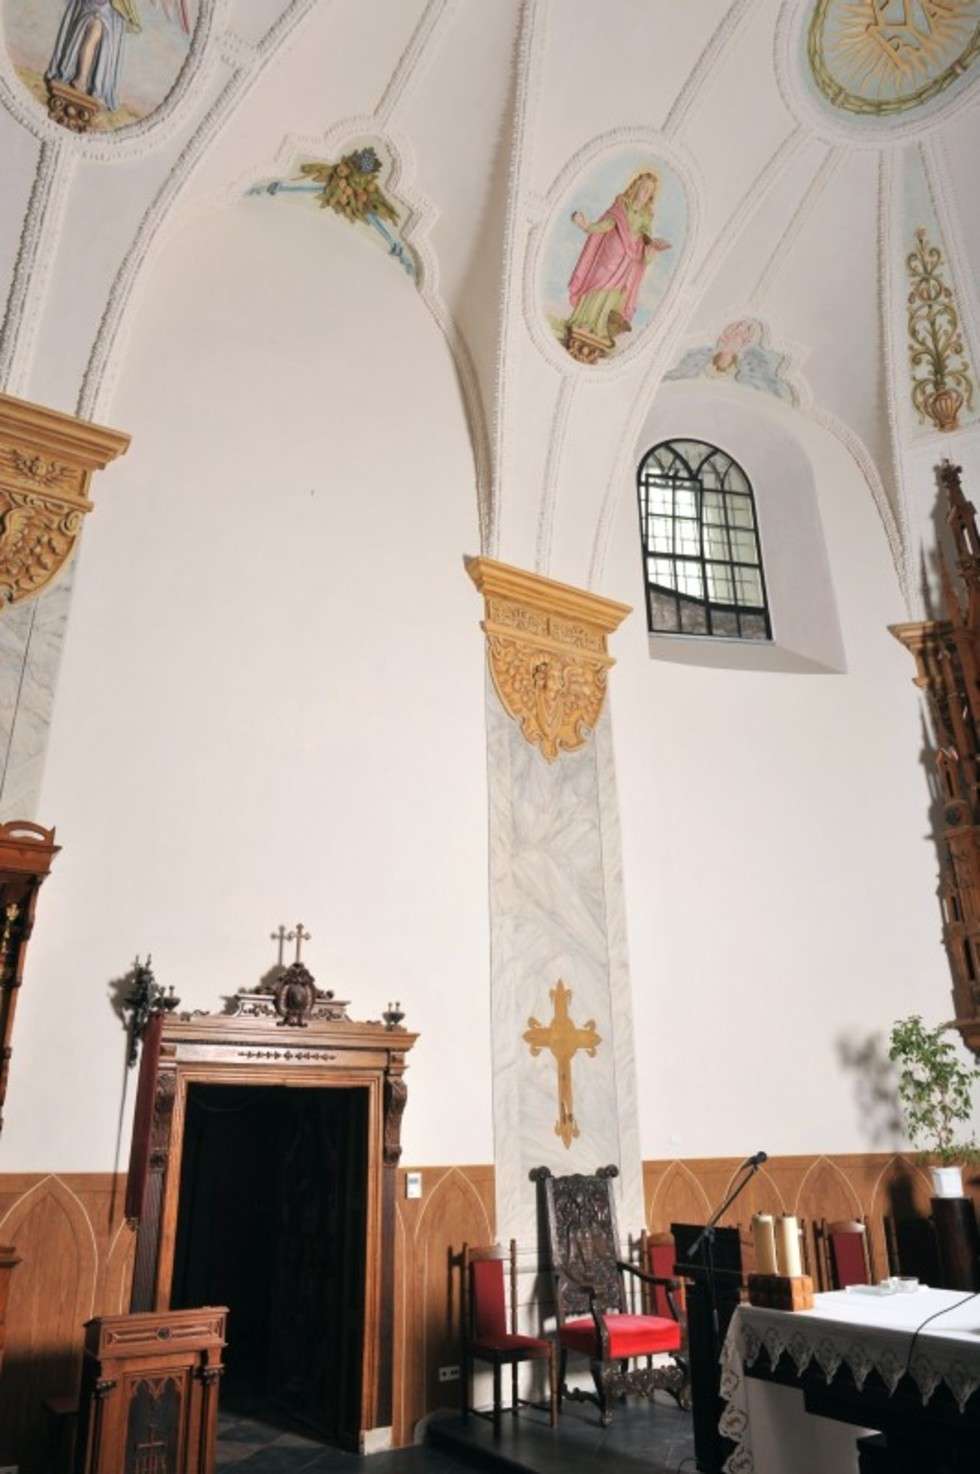  Przywrócono też historyczną dekorację sklepienia i ścian prezbiterium.